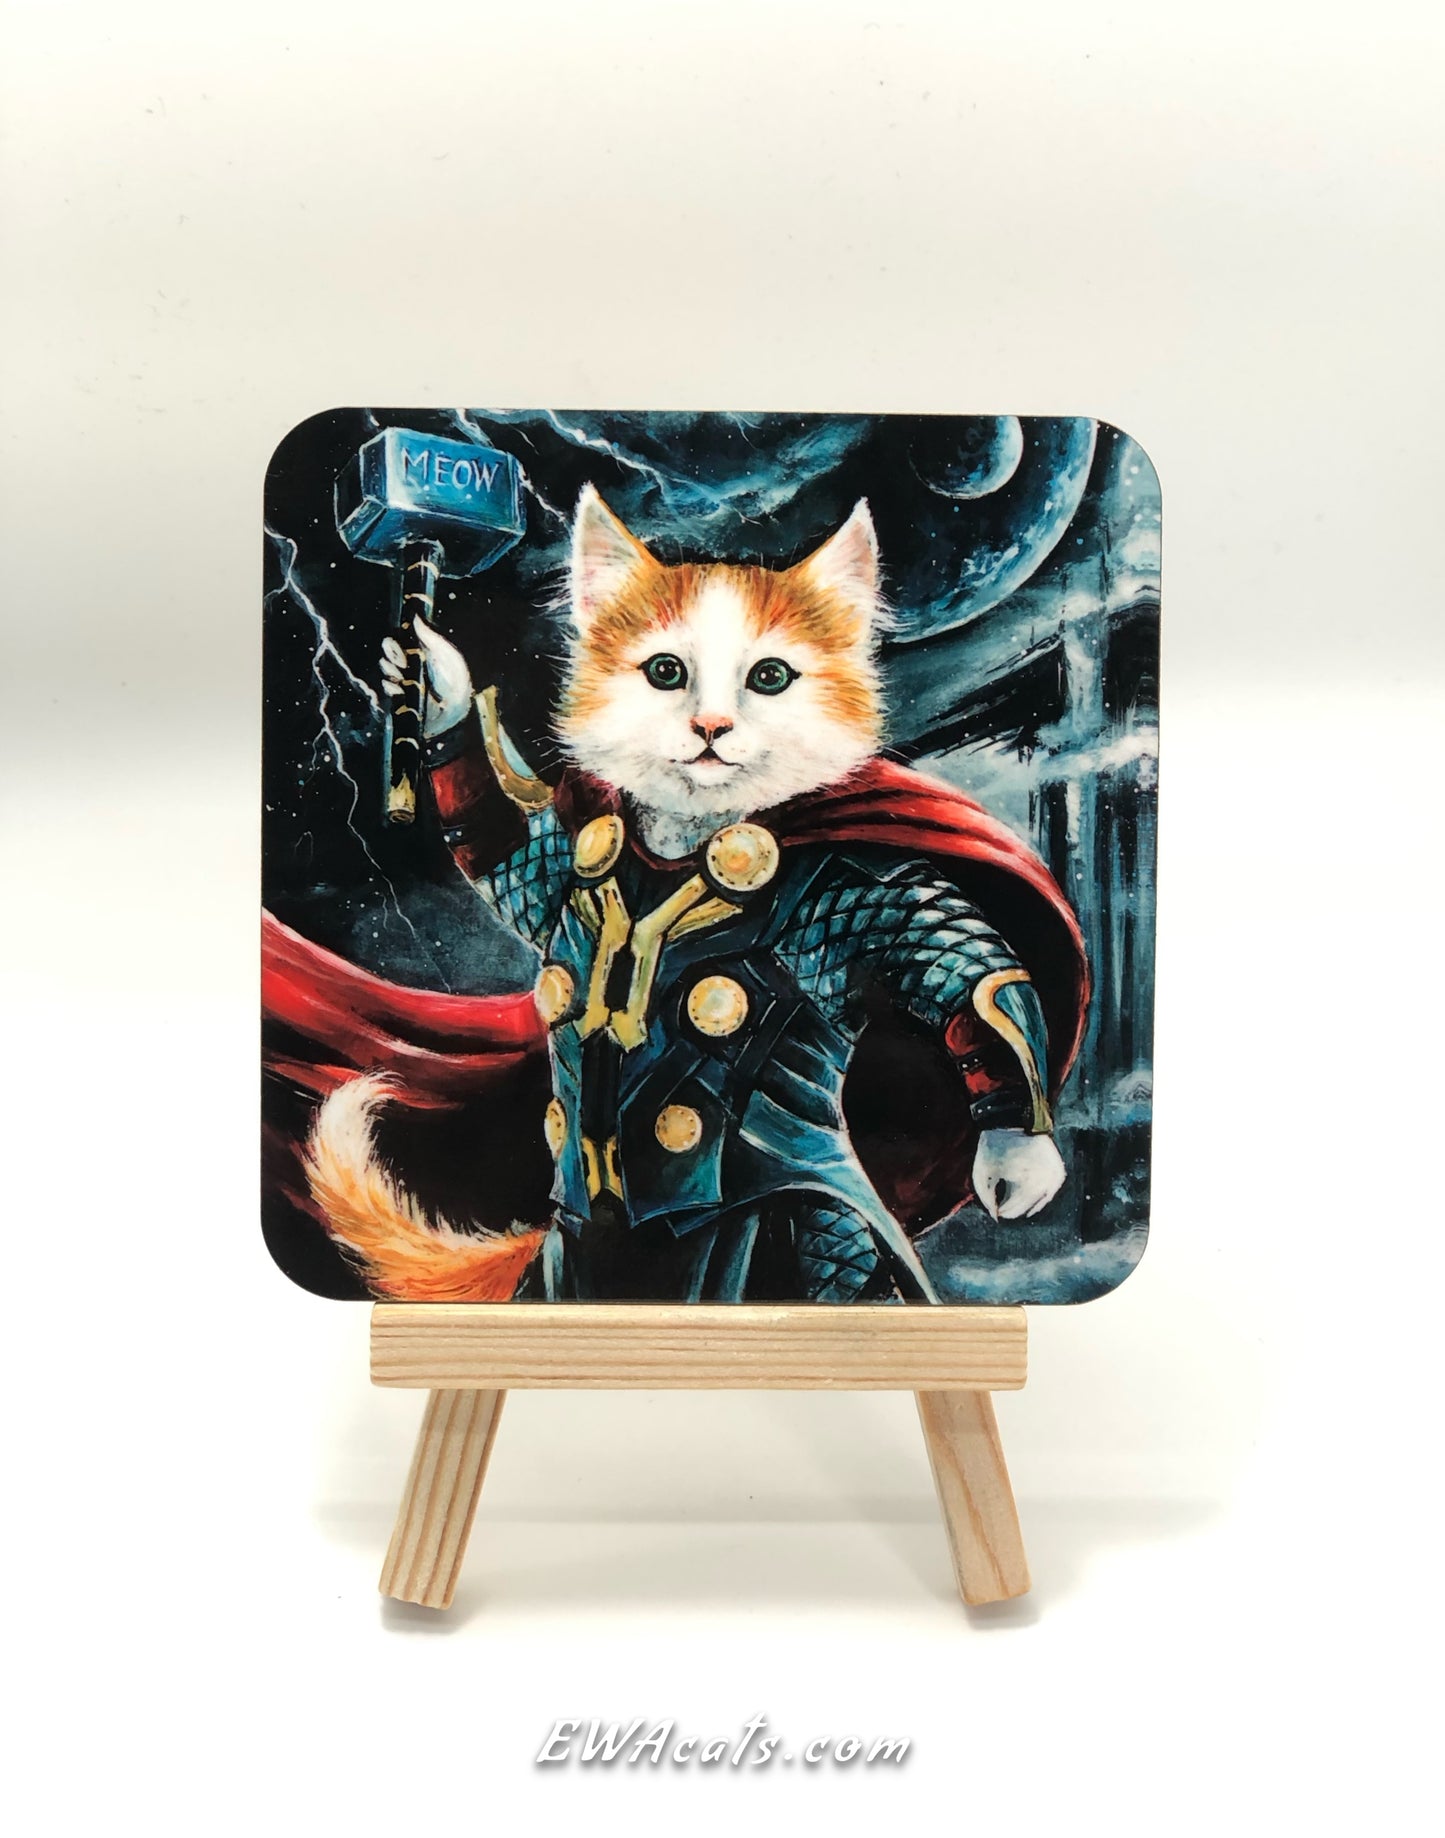 Coaster "Thor Kitty"